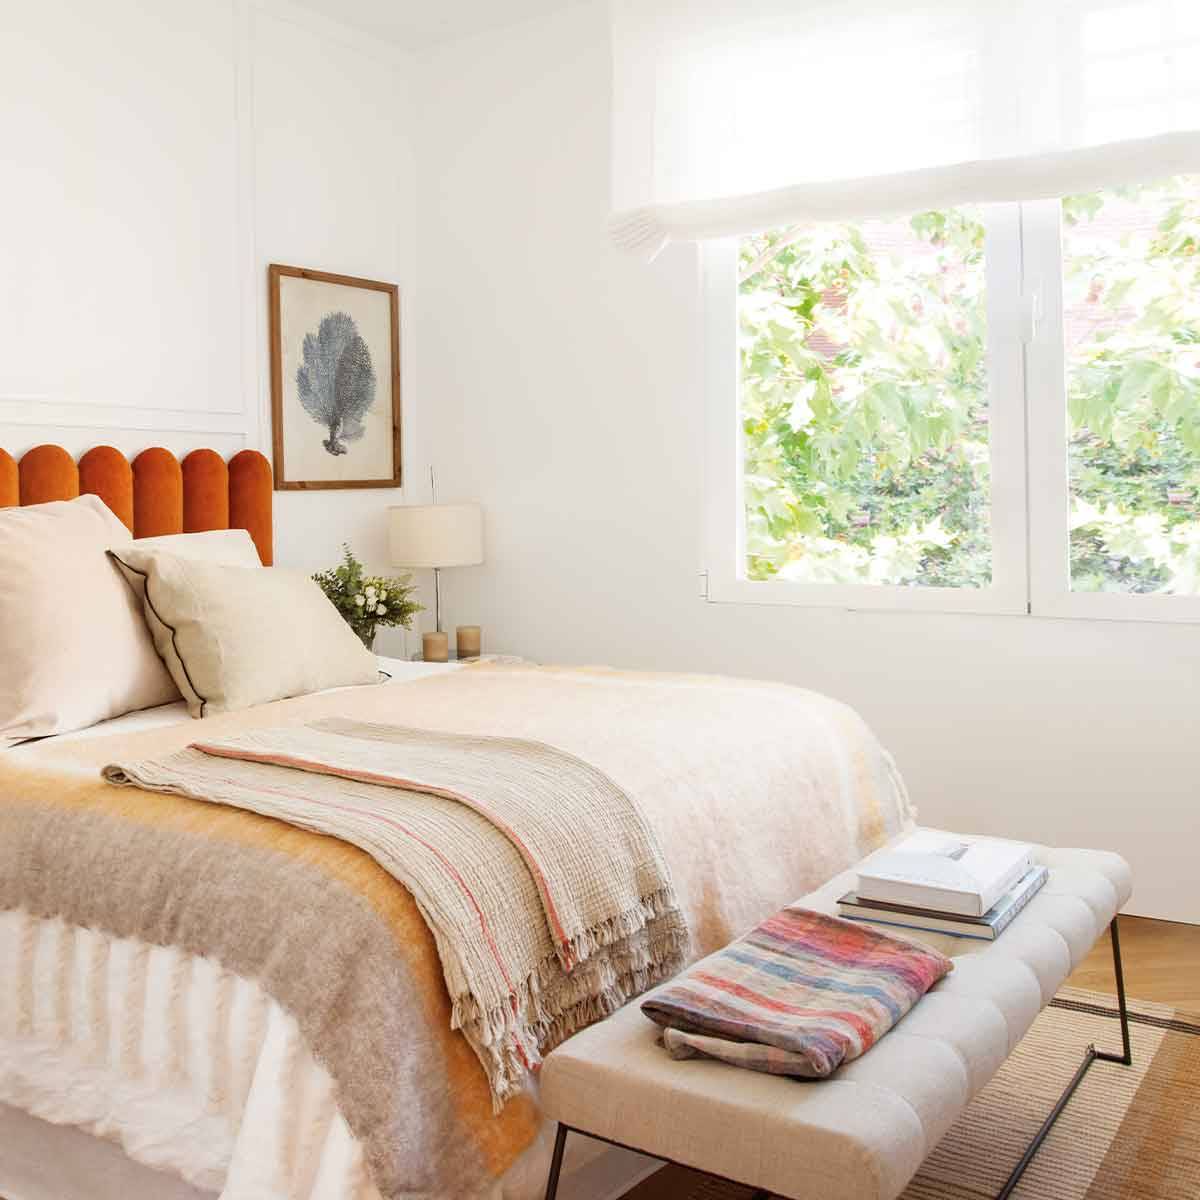 Dormitorio blanco con cabecero tapizado naranja_00501853